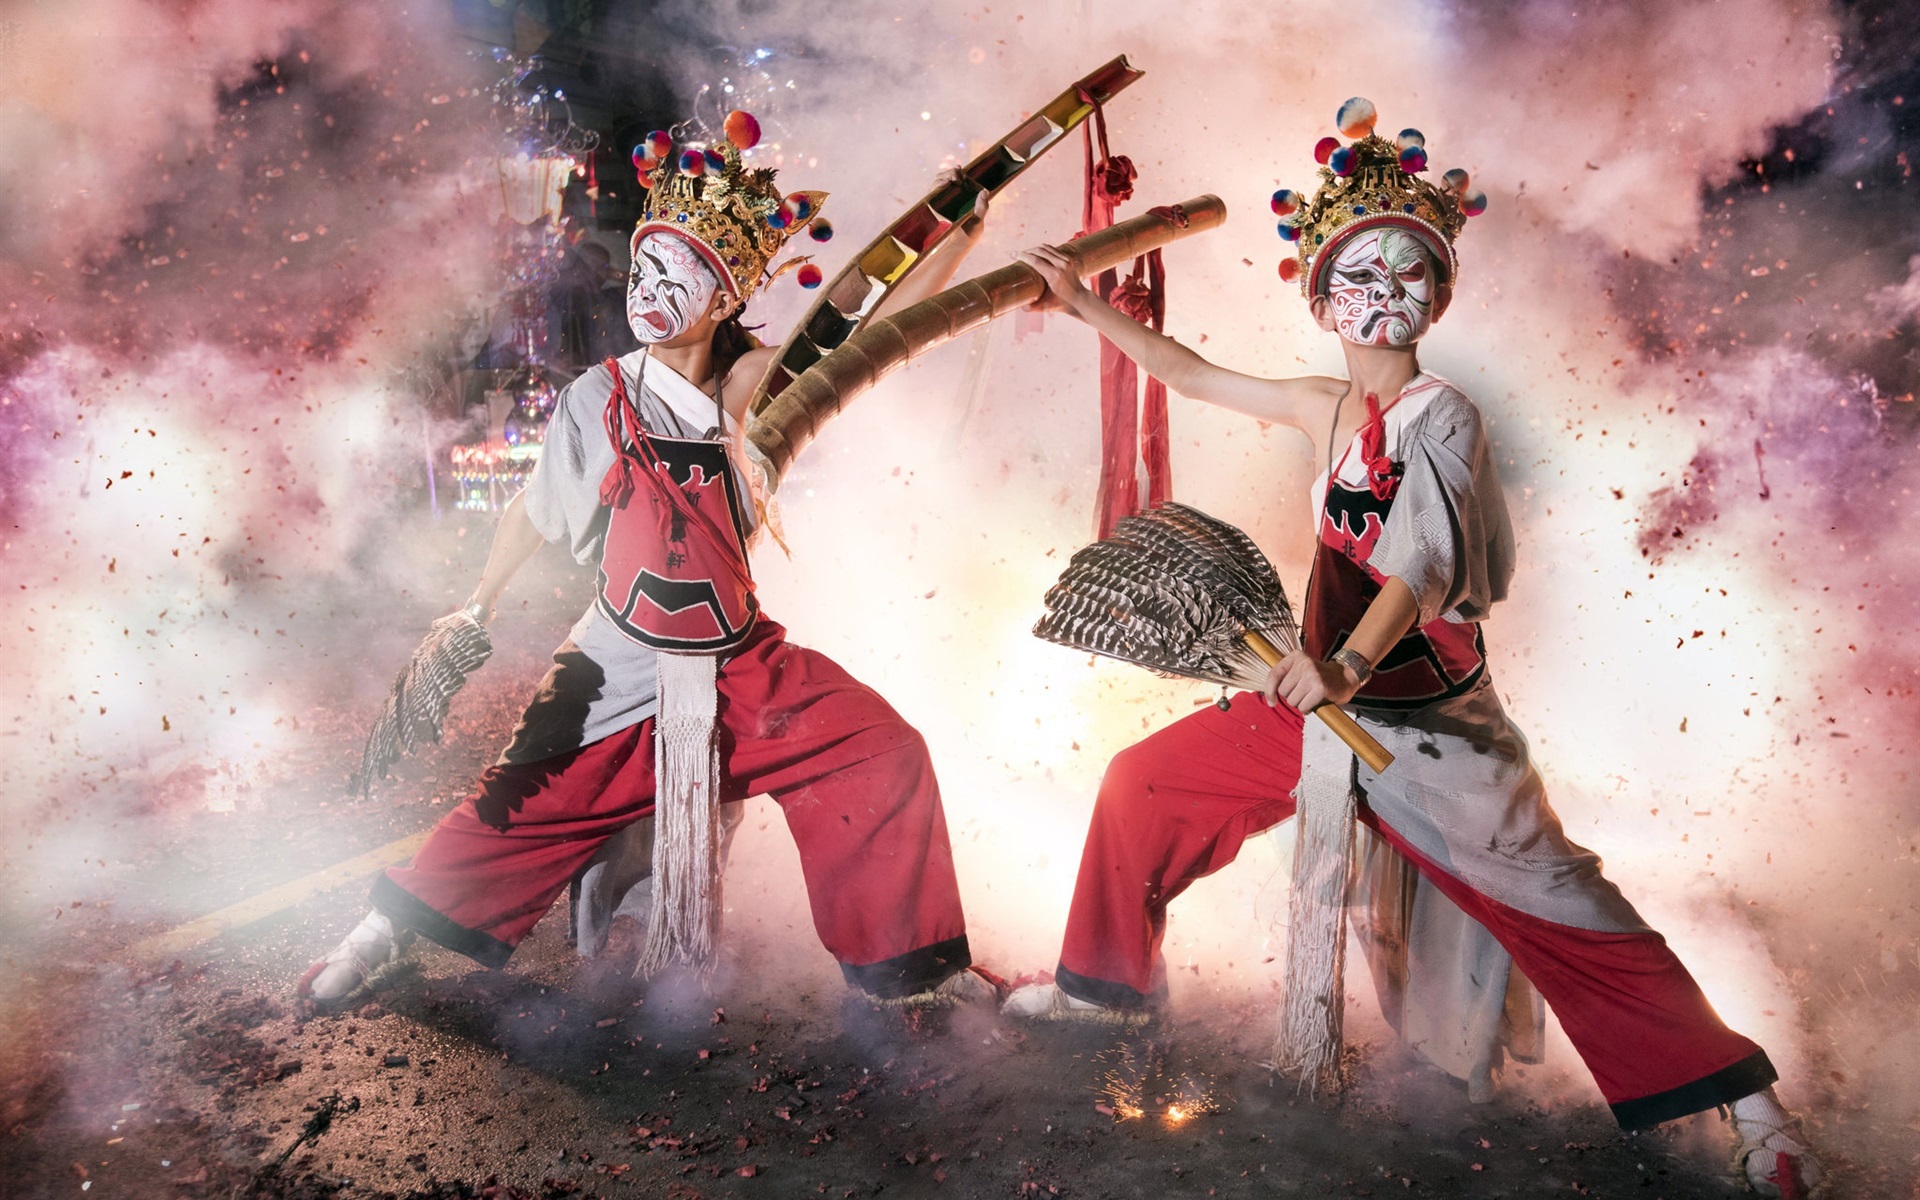 Wallpaper Chinese culture dance mask firecracker 1920x1200 HD